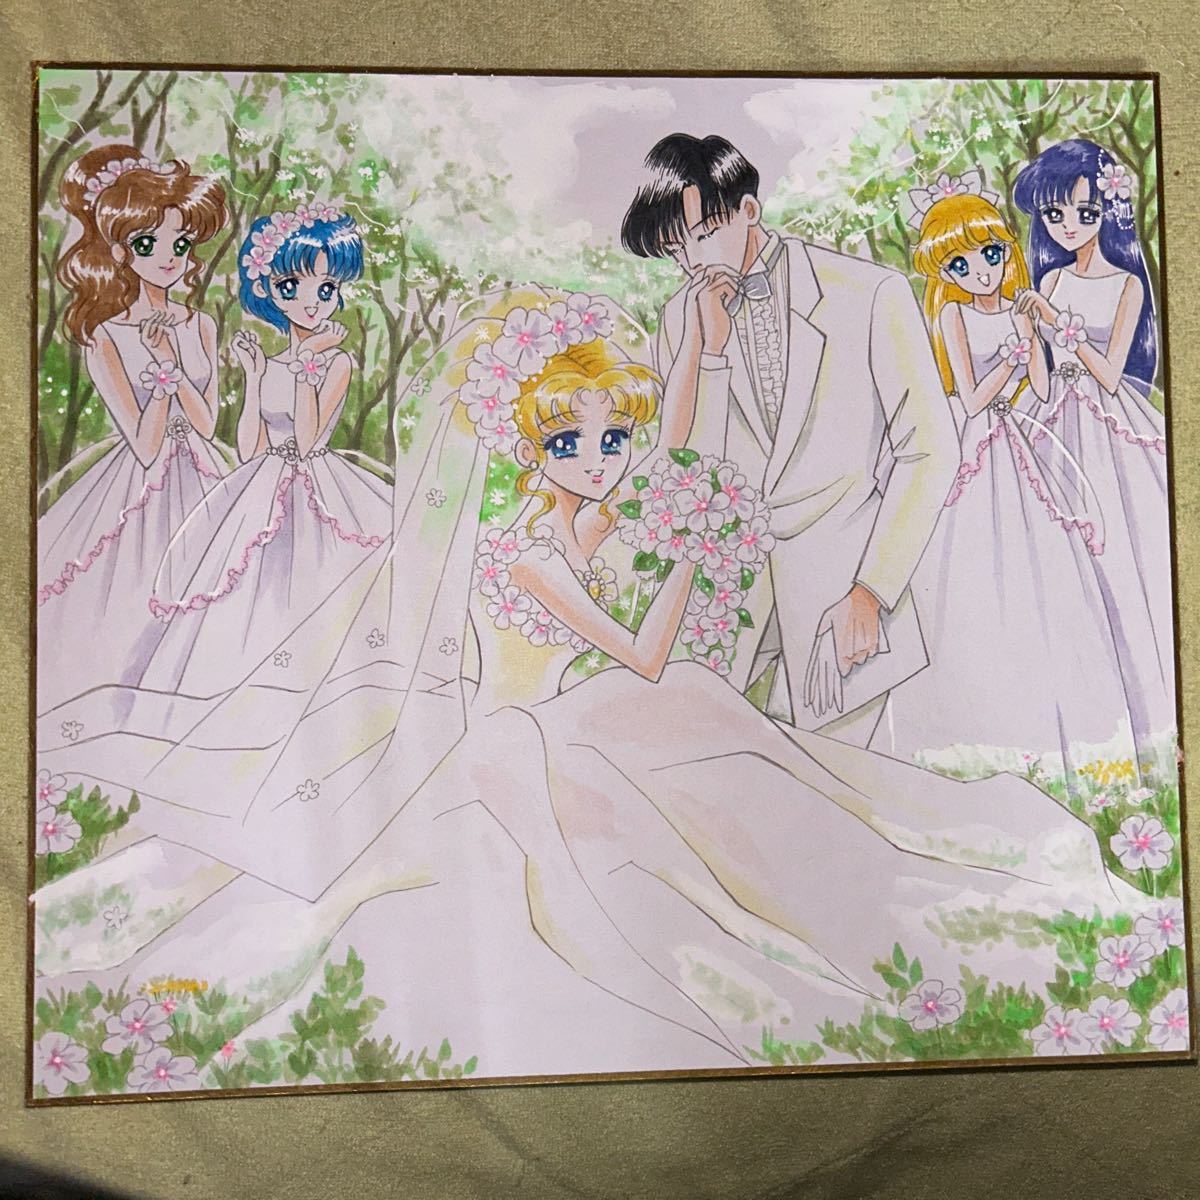 Hübscher Wächter Sailor Moon Doujin, handgezeichnete Illustration von Mamoru Chiba & Usagi Tsukino & Ami Mizuno & Rei Hino & Makoto Kino & Minako Aino, Comics, Anime-Waren, handgezeichnete Illustration